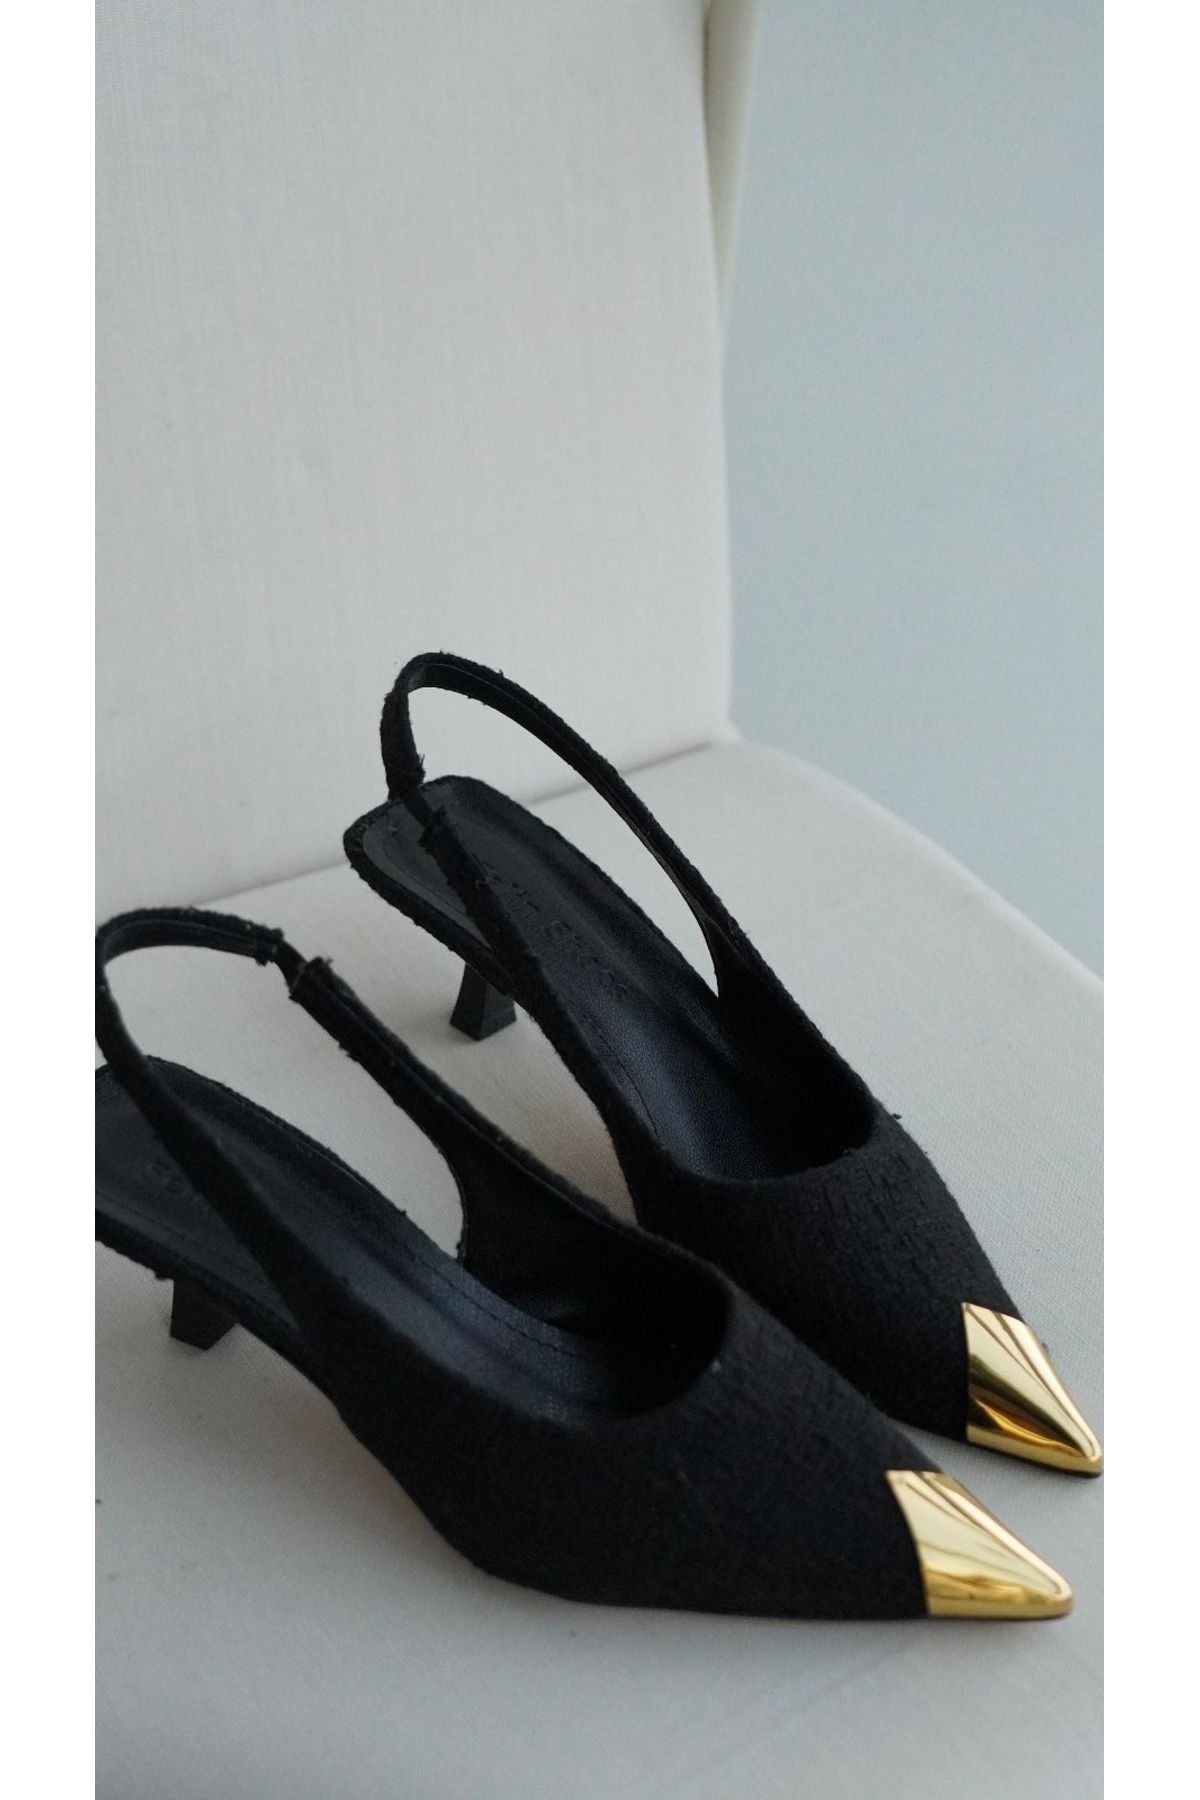 selinshoes Silvia Sivri Burunlu Lastikli Gold Detaylı Kadın Topuklu Ayakkabı - SİYAH TÜVİT